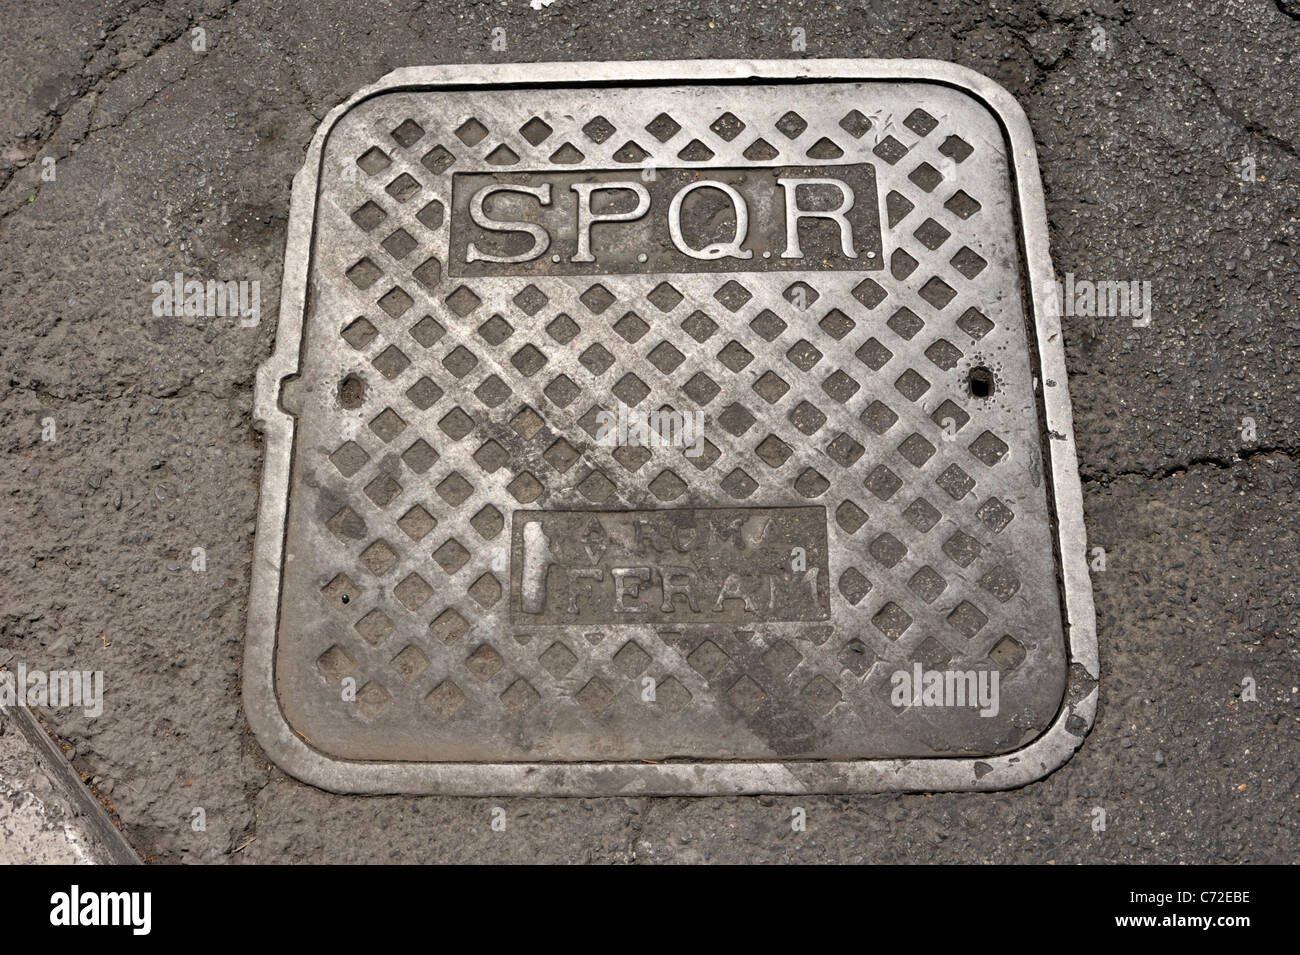 italy, rome, SPQR manhole cover Stock Photo